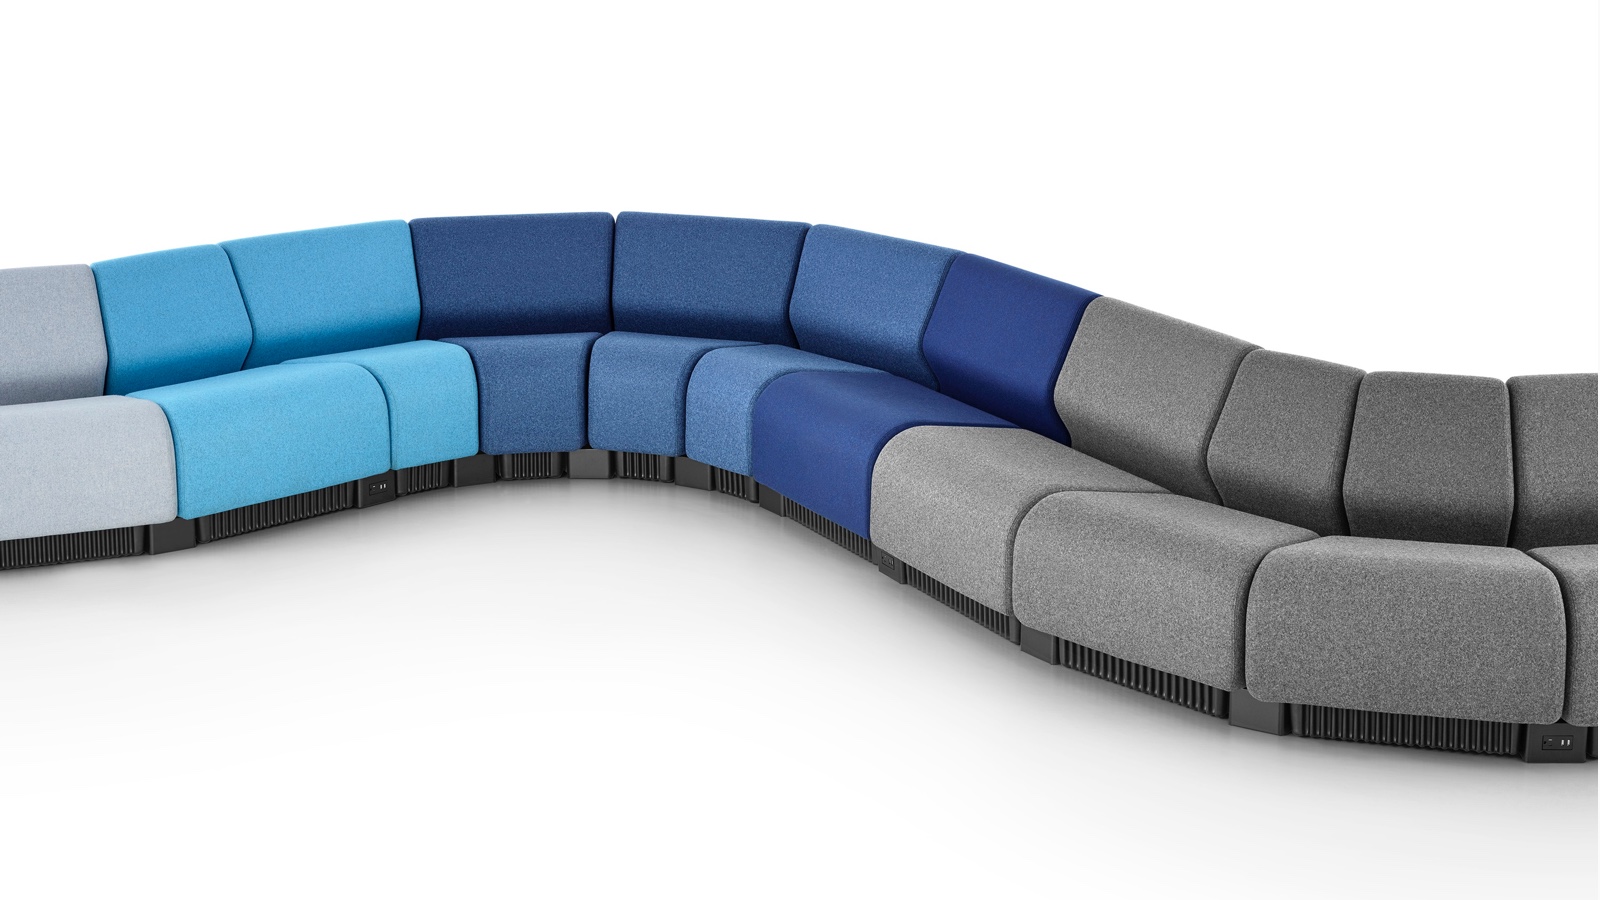 Eine schlangenförmige Sitzkonfiguration mit Chadwick Modular Seating-Modulen in Grau- und Blautönen.